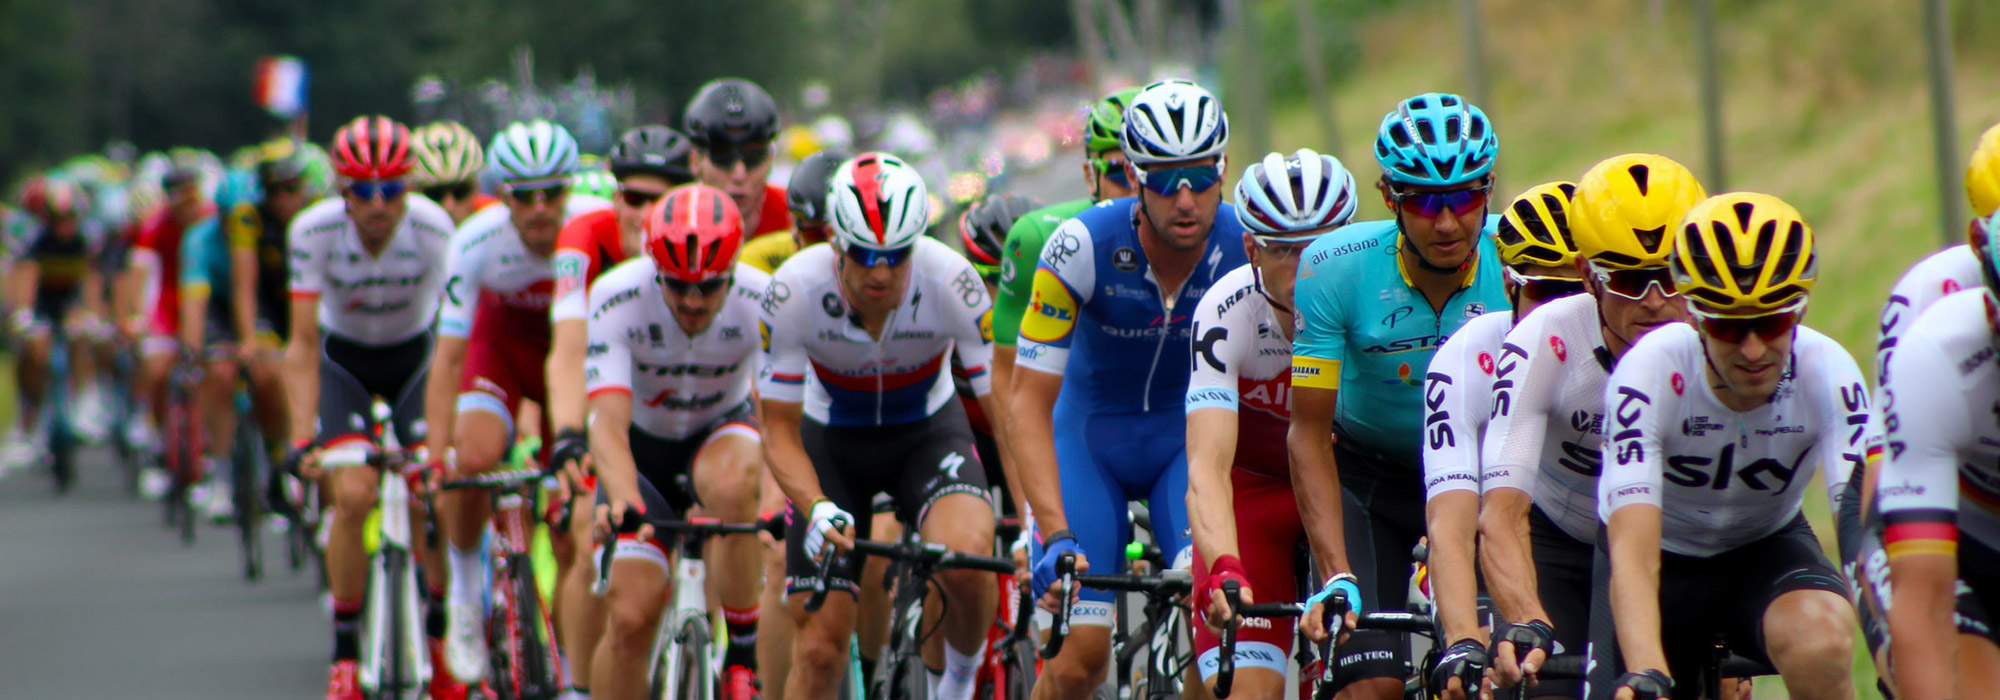 Tour De France cyclists 